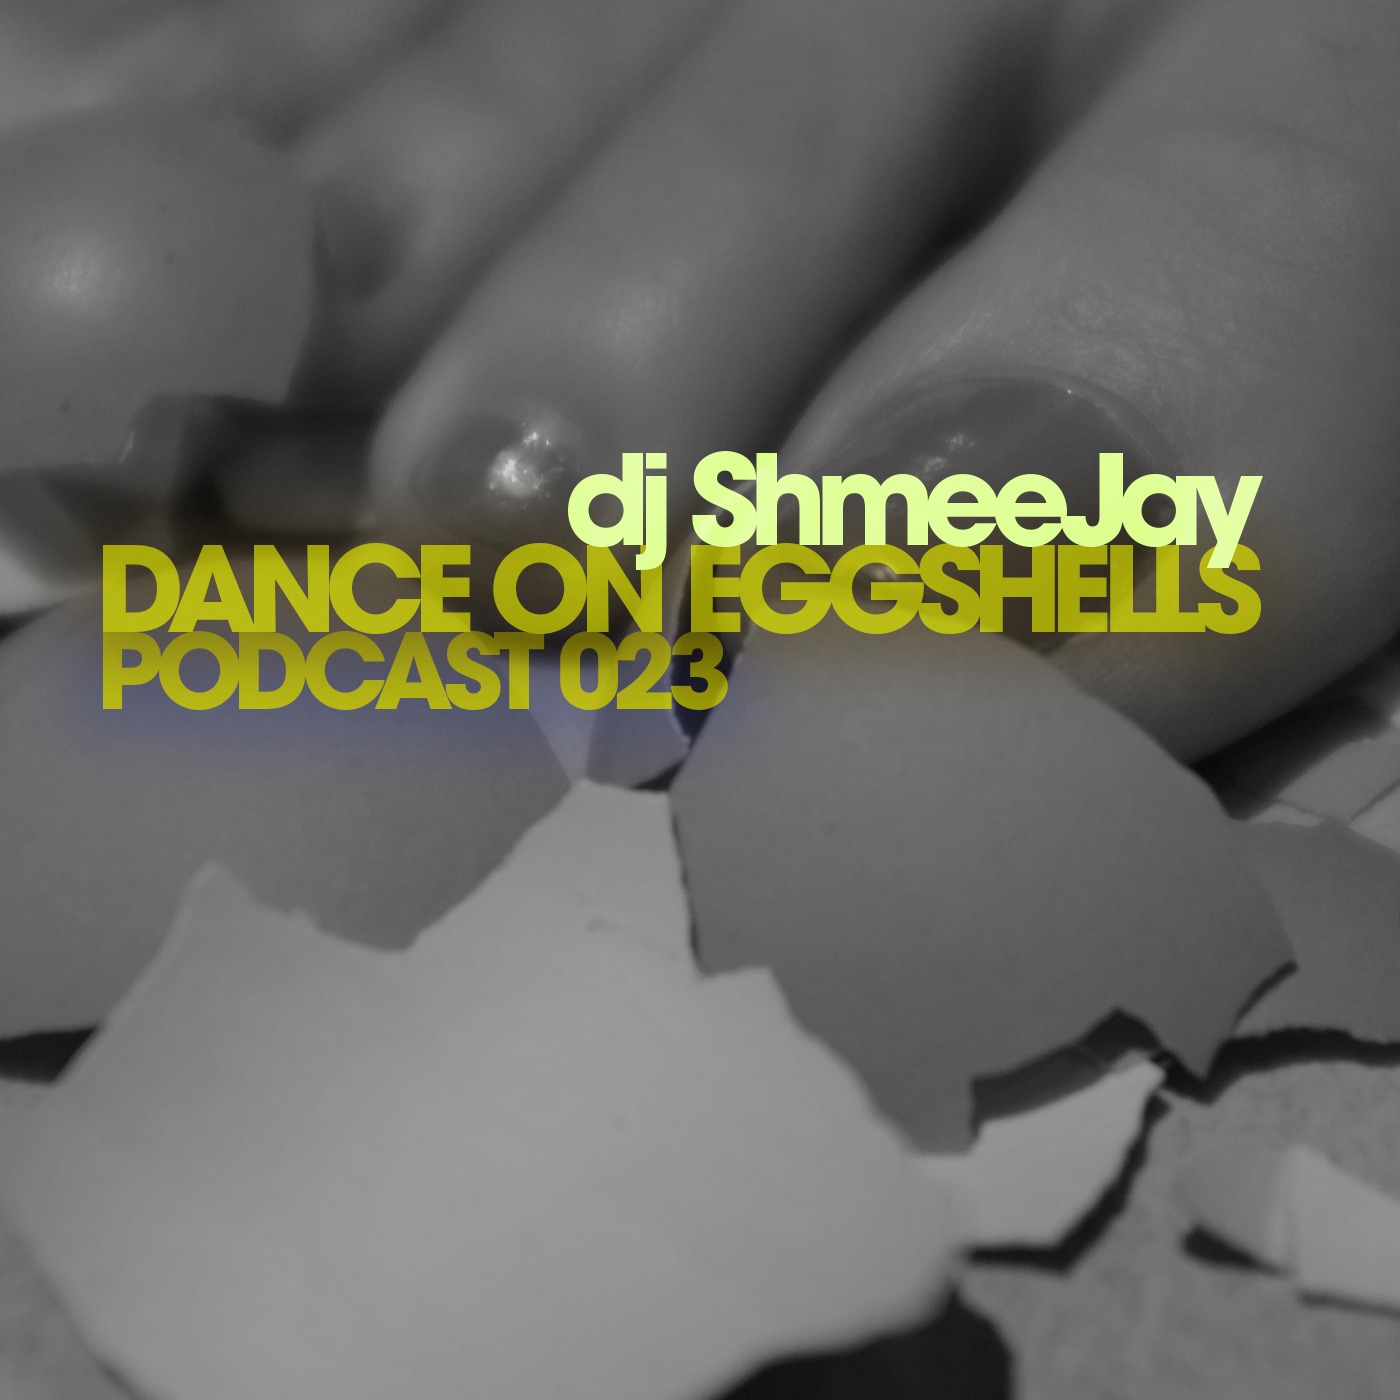 DOE Podcast 023 - dj ShmeeJay